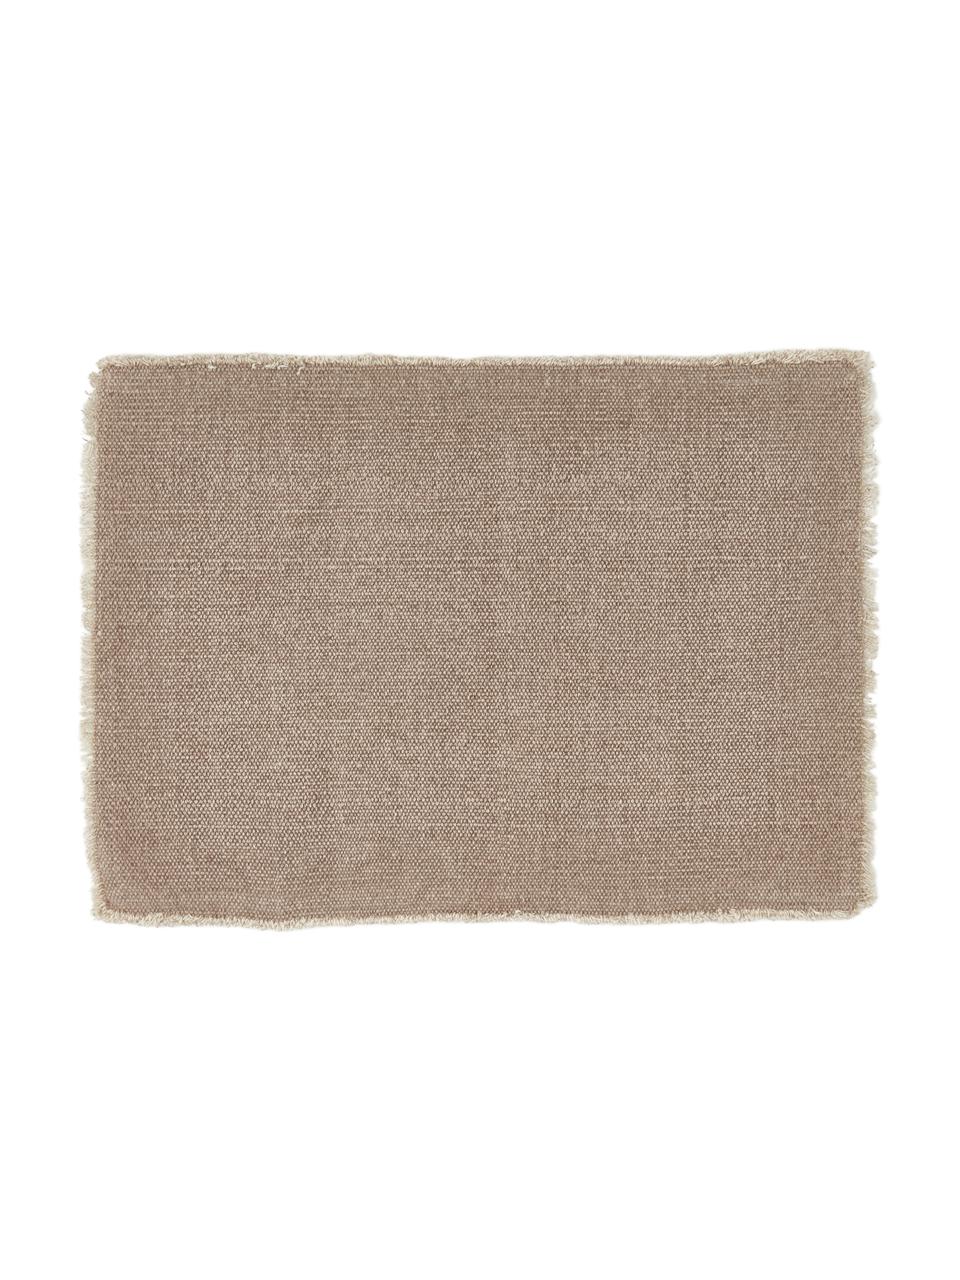 Podkładka z bawełny Edge, 6 szt., 85% bawełna, 15% włókna mieszane, Beżowy, S 35 x D 48 cm